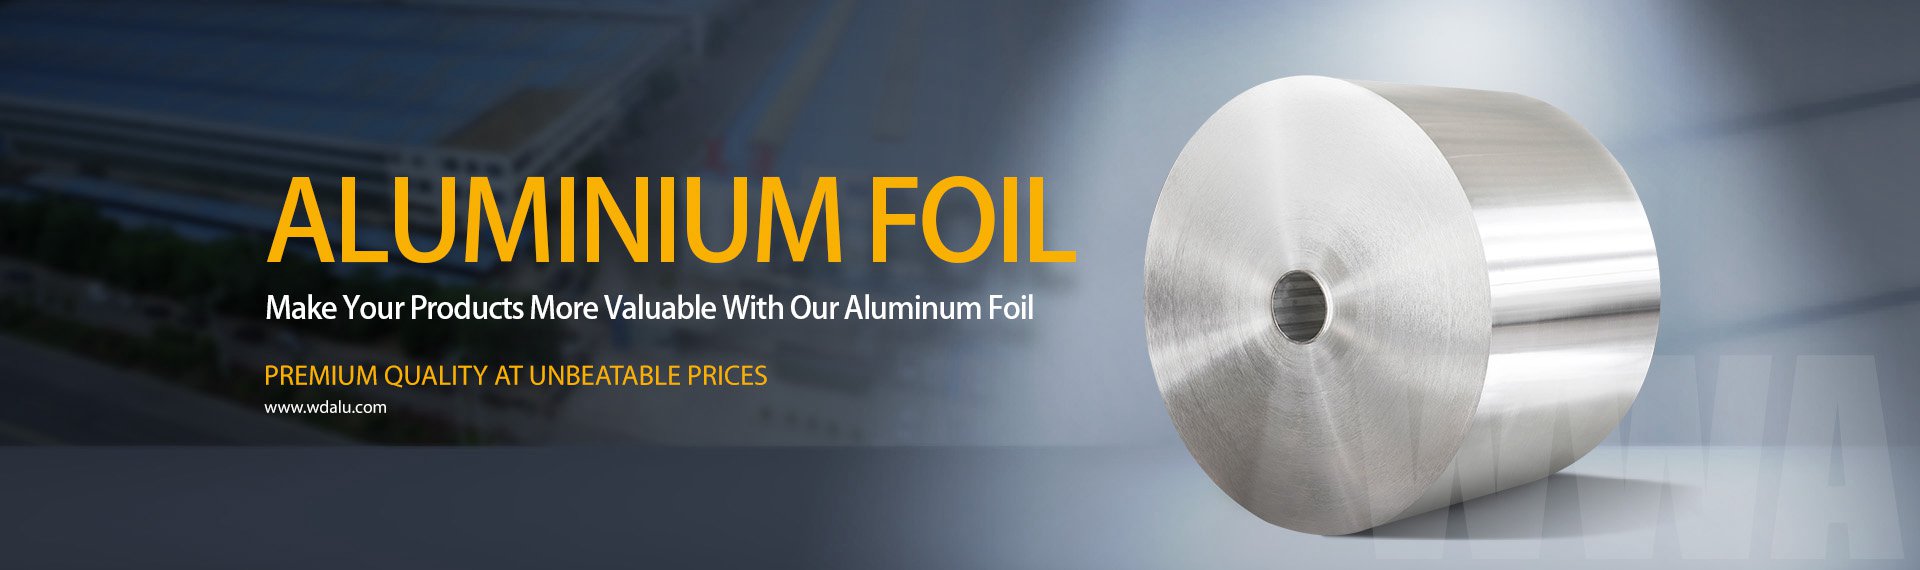 aluminium foil banner